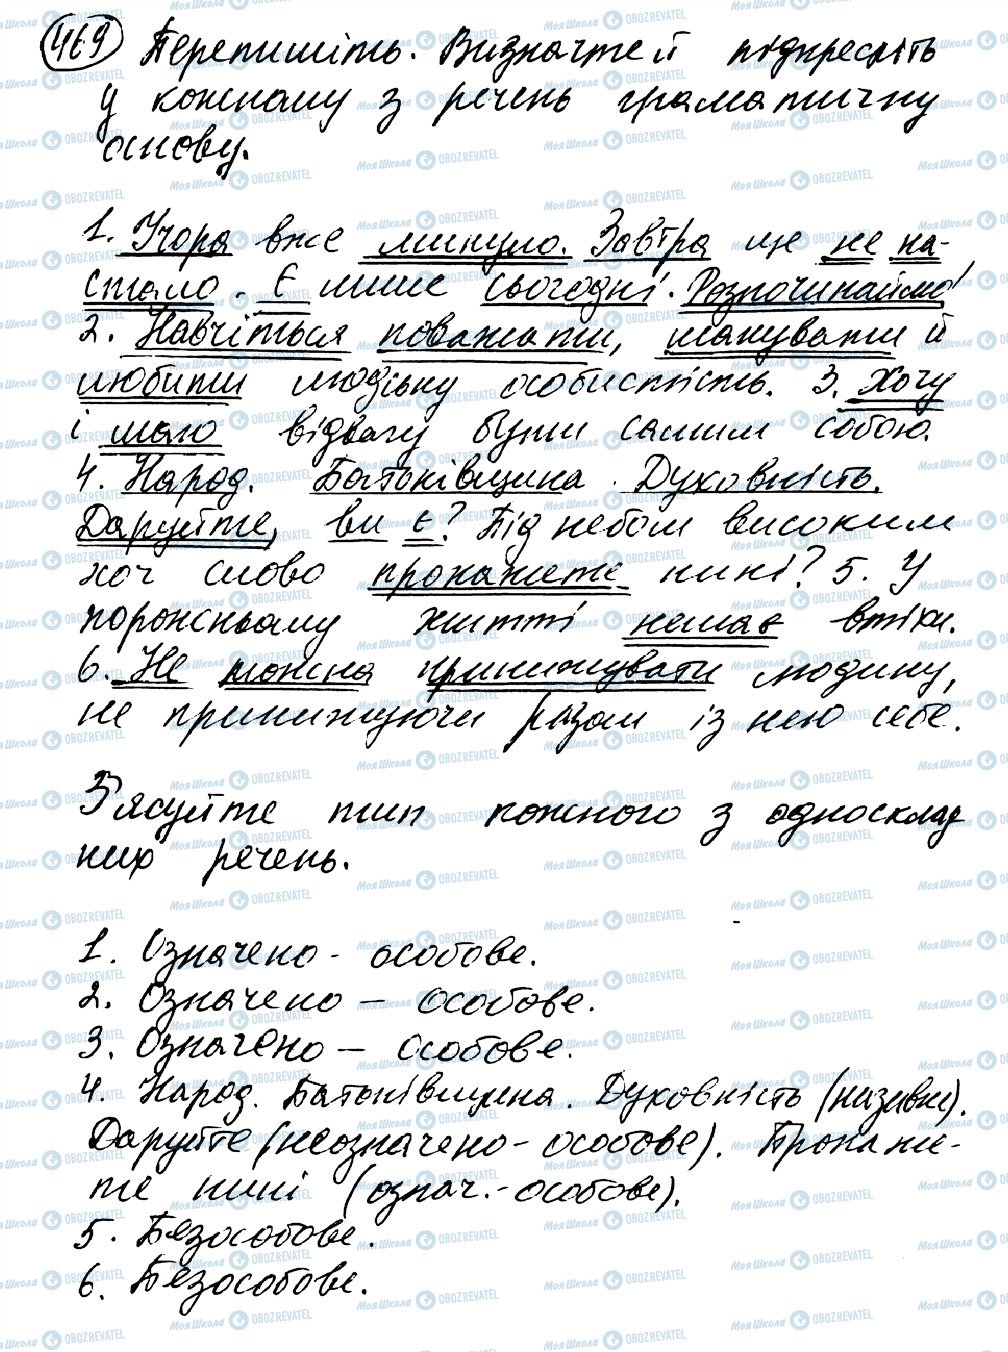 ГДЗ Українська мова 8 клас сторінка 469